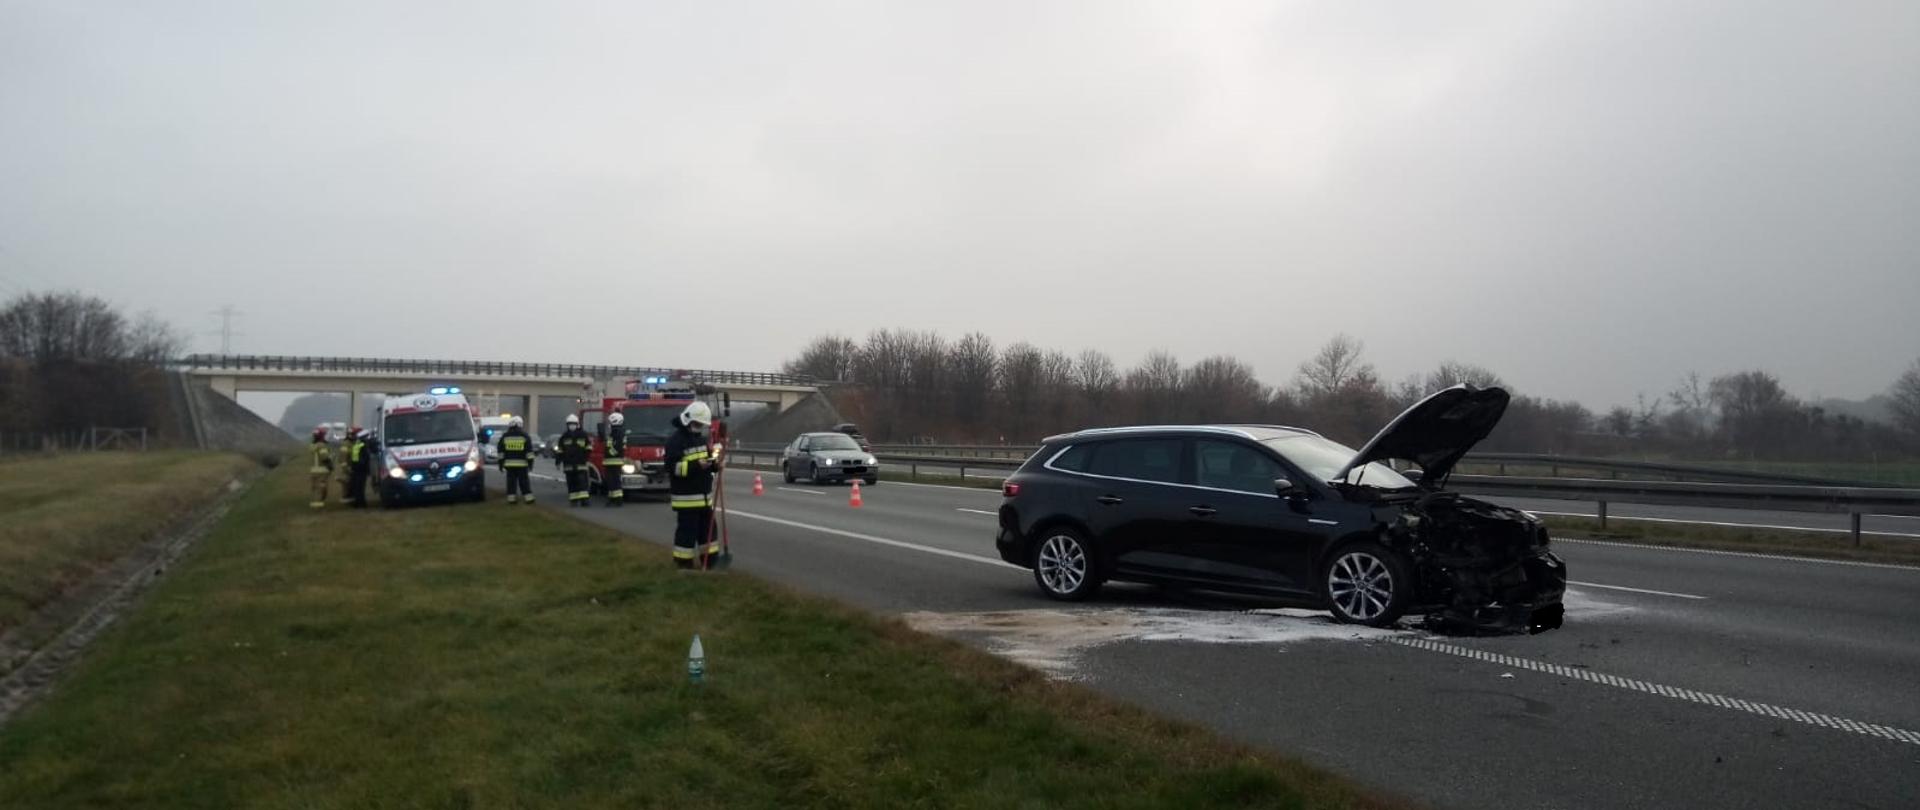 Wypadek z udziałem 2 samochodów osobowych na autostradzie A4 w pobliżu miejscowości Przylesie